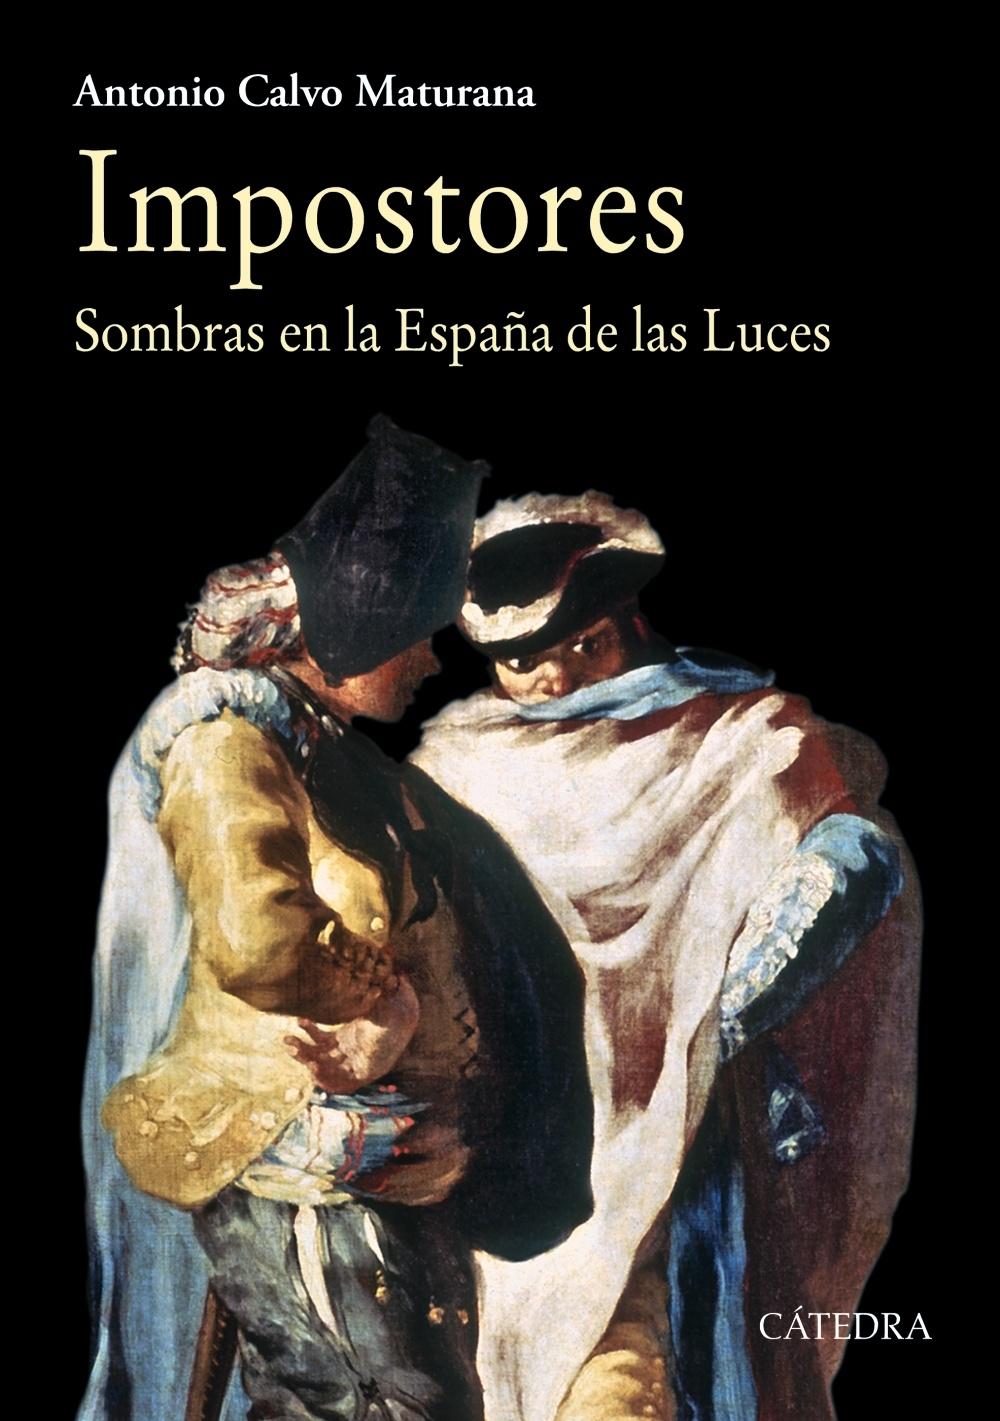 Impostores "Sombras en la España de las Luces"